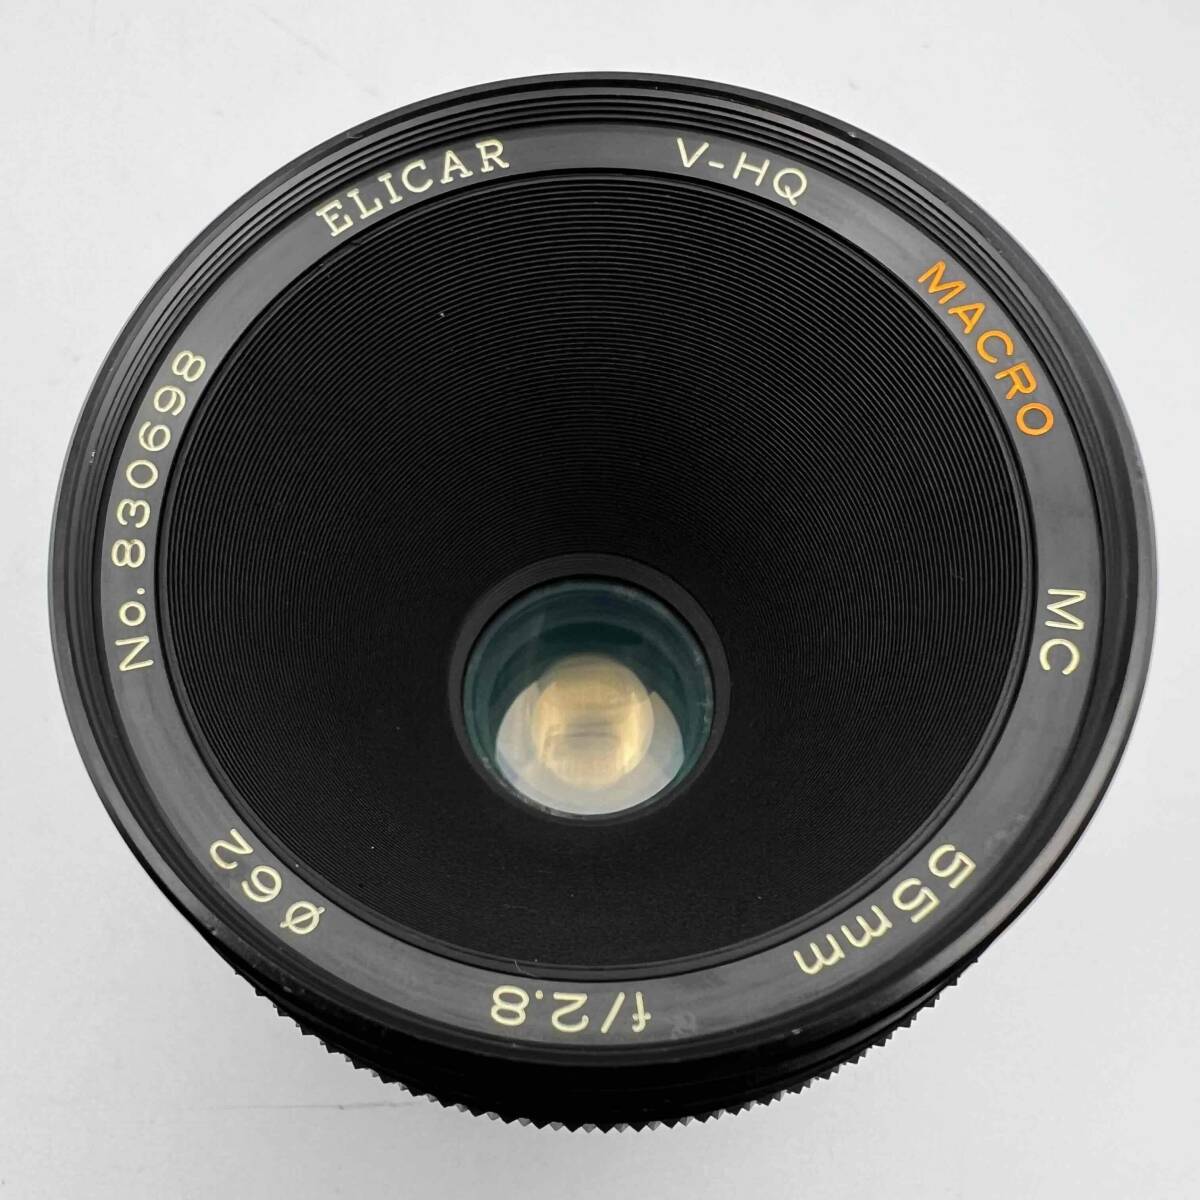 エリカ ELICAR V-HQ MACRO MC 55mm F2.8 MACRO 単焦点レンズ マクロレンズ 一眼カメラ用 マニュアルフォーカス MF 現状品